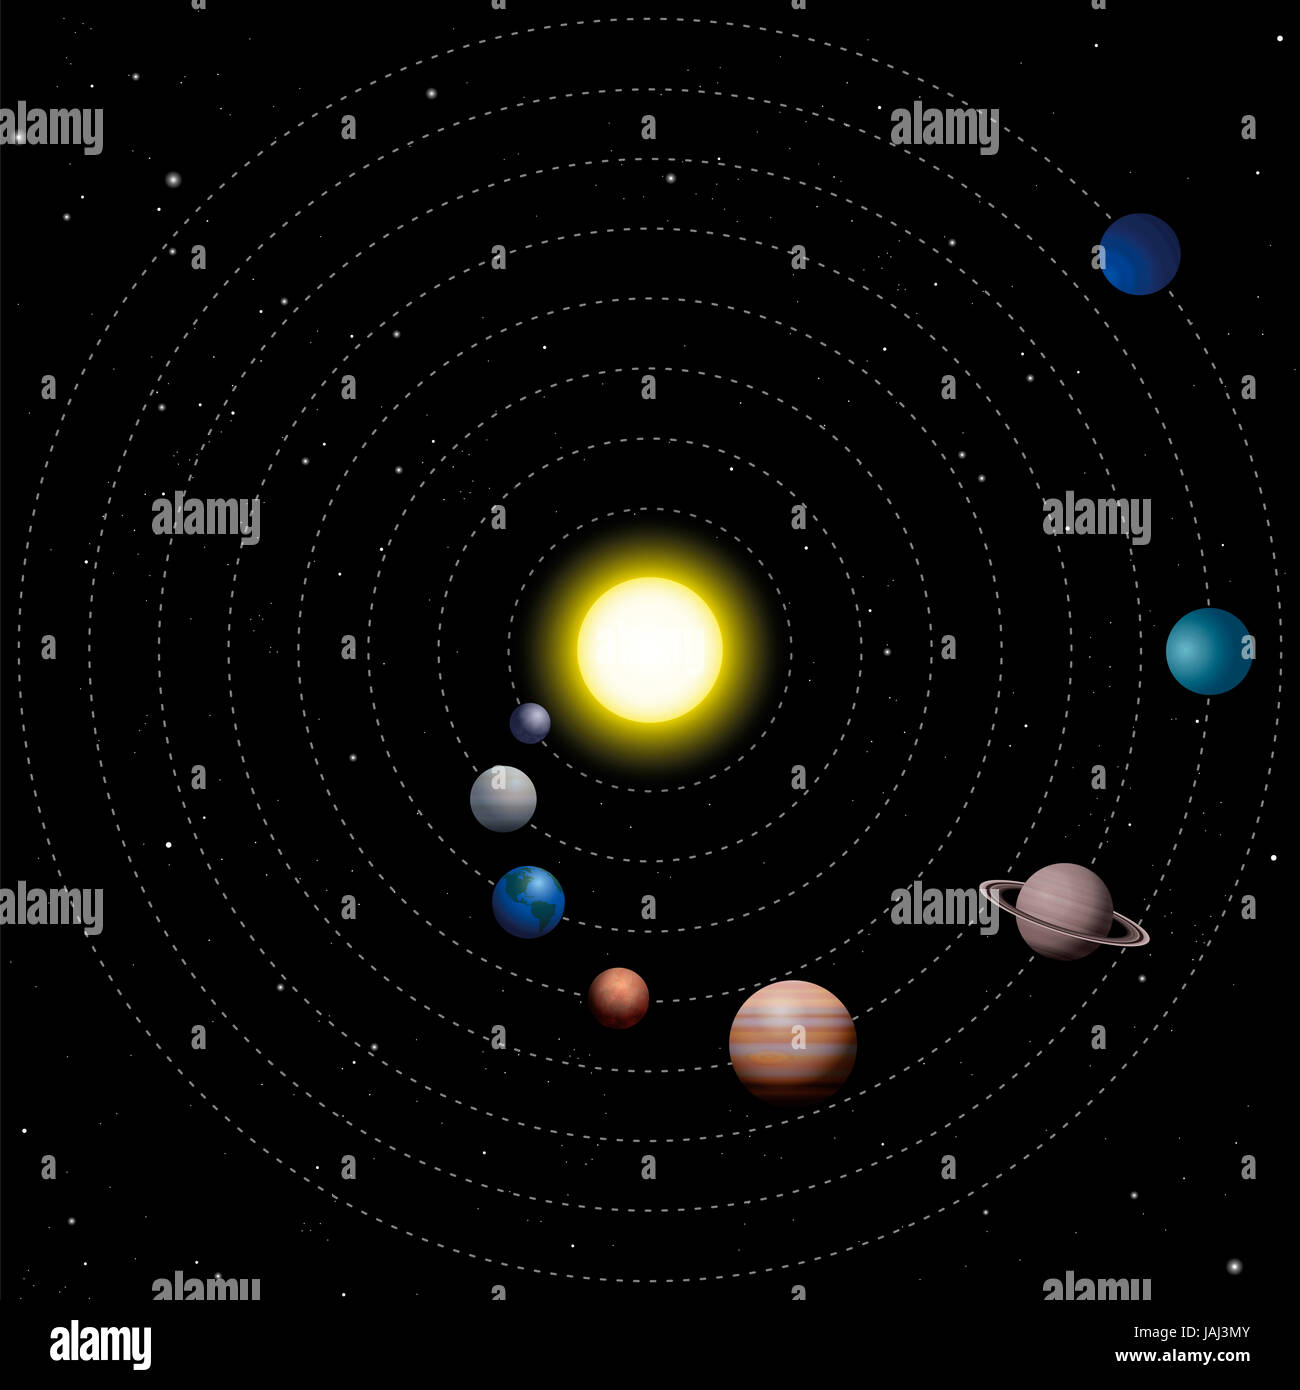 Système solaire - modèle schématique du soleil avec les huit planètes qui tournent autour d'elle - Mercure, Vénus, la Terre, Mars, Jupiter, Saturne, Uranus, Neptune. Banque D'Images